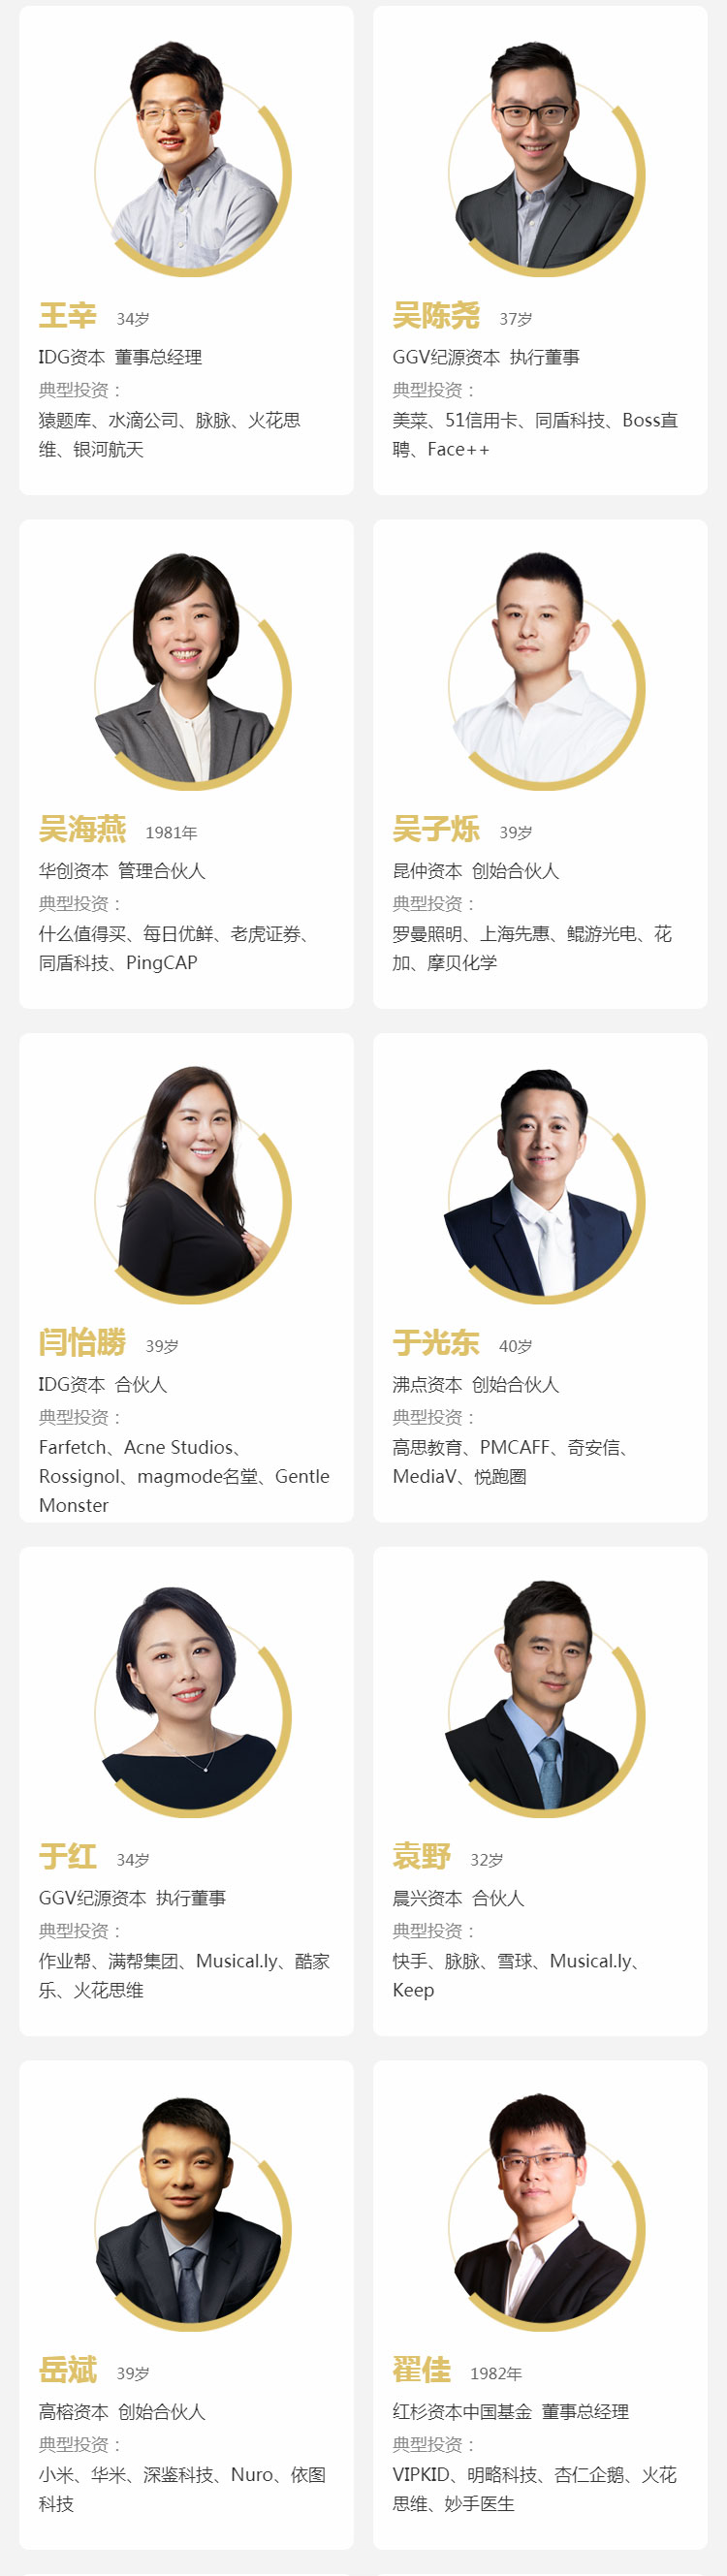 2019「F40中国青年投资人榜单」揭晓